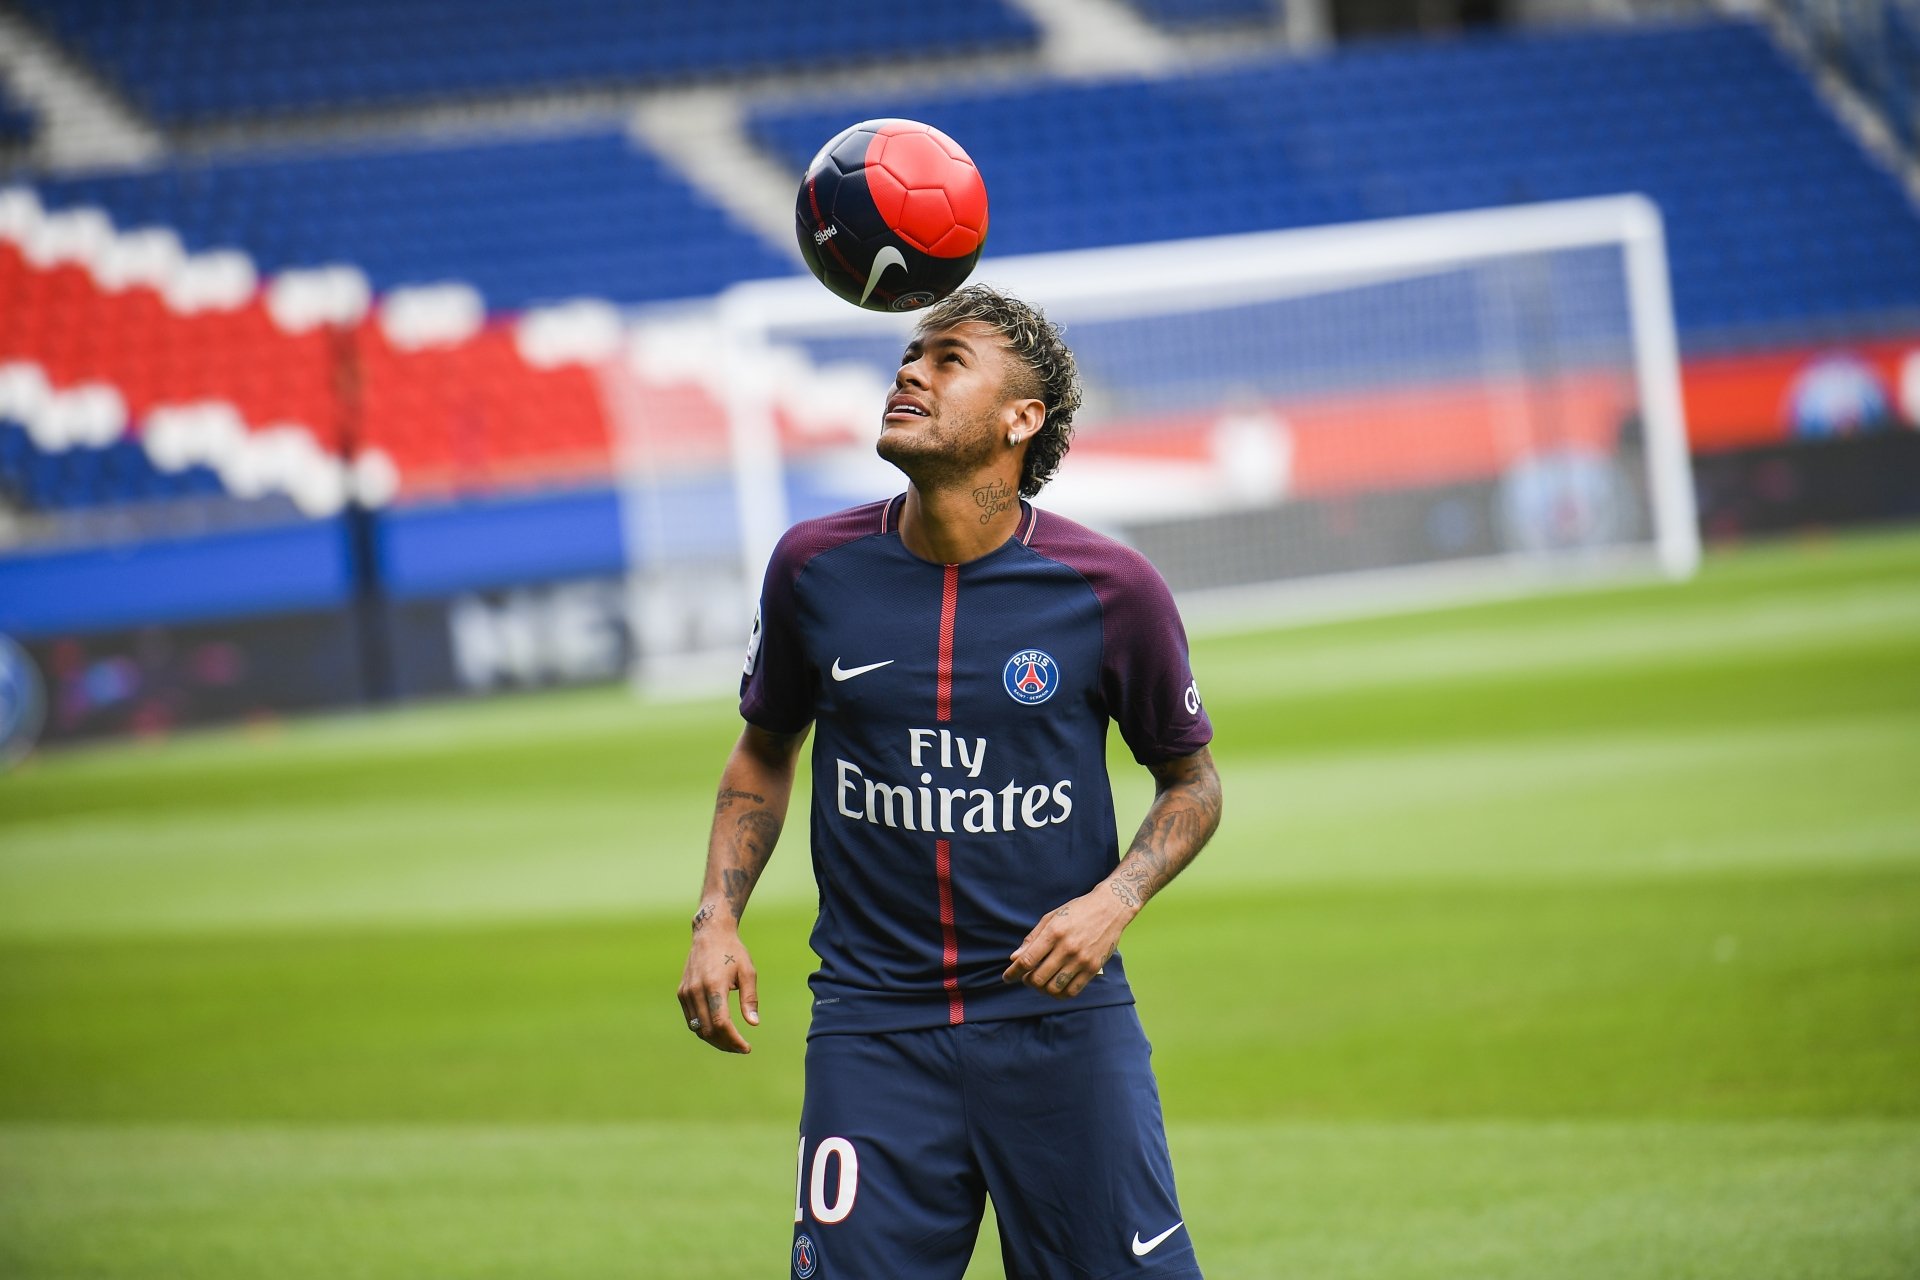 Barcelona processa Neymar por £ 9 milhões em salários pagos em excesso